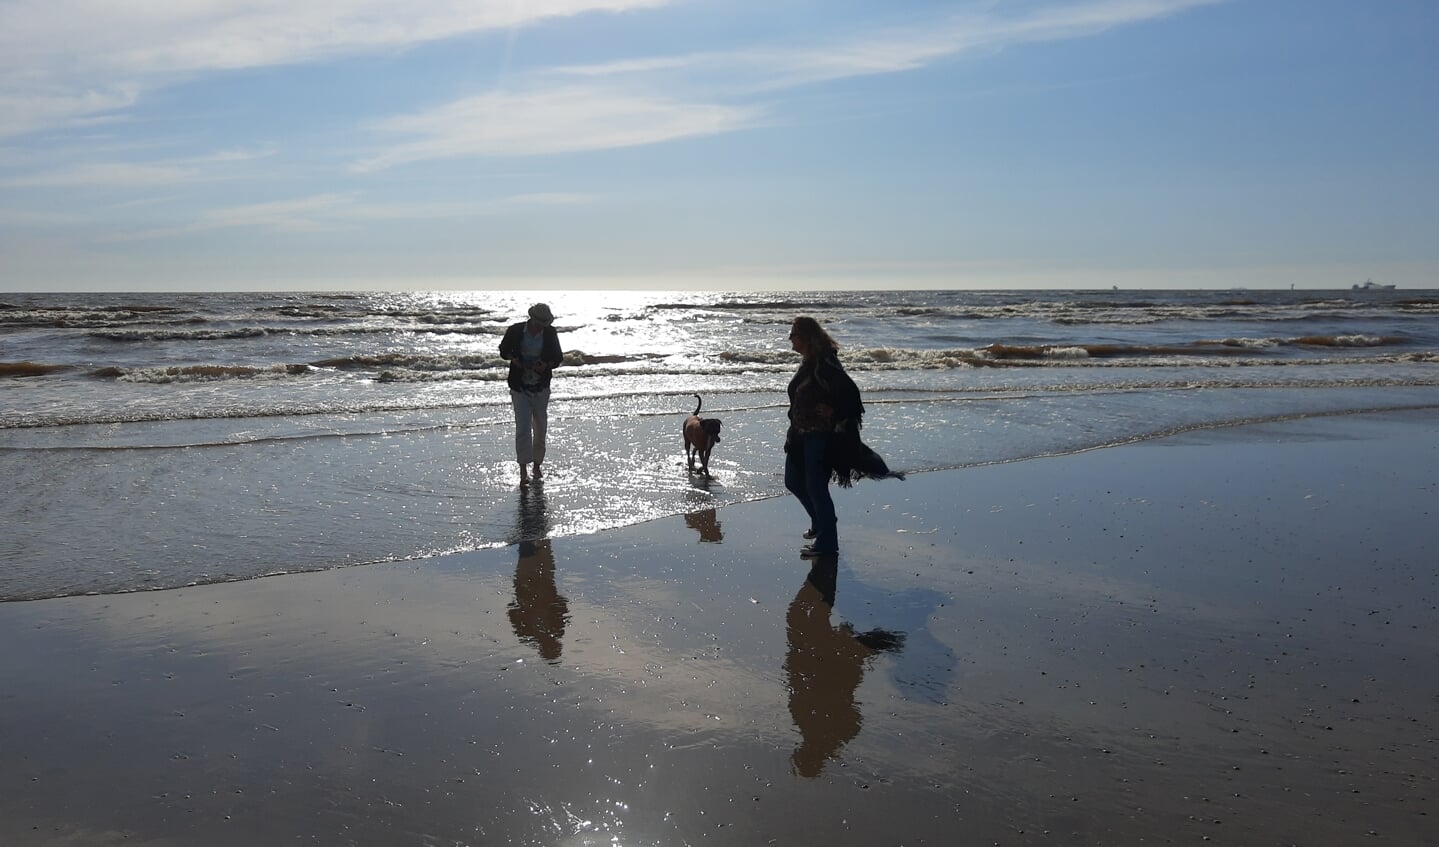 Lekker wandelen met de hond op het strand kan vanaf vandaag weer overdag.